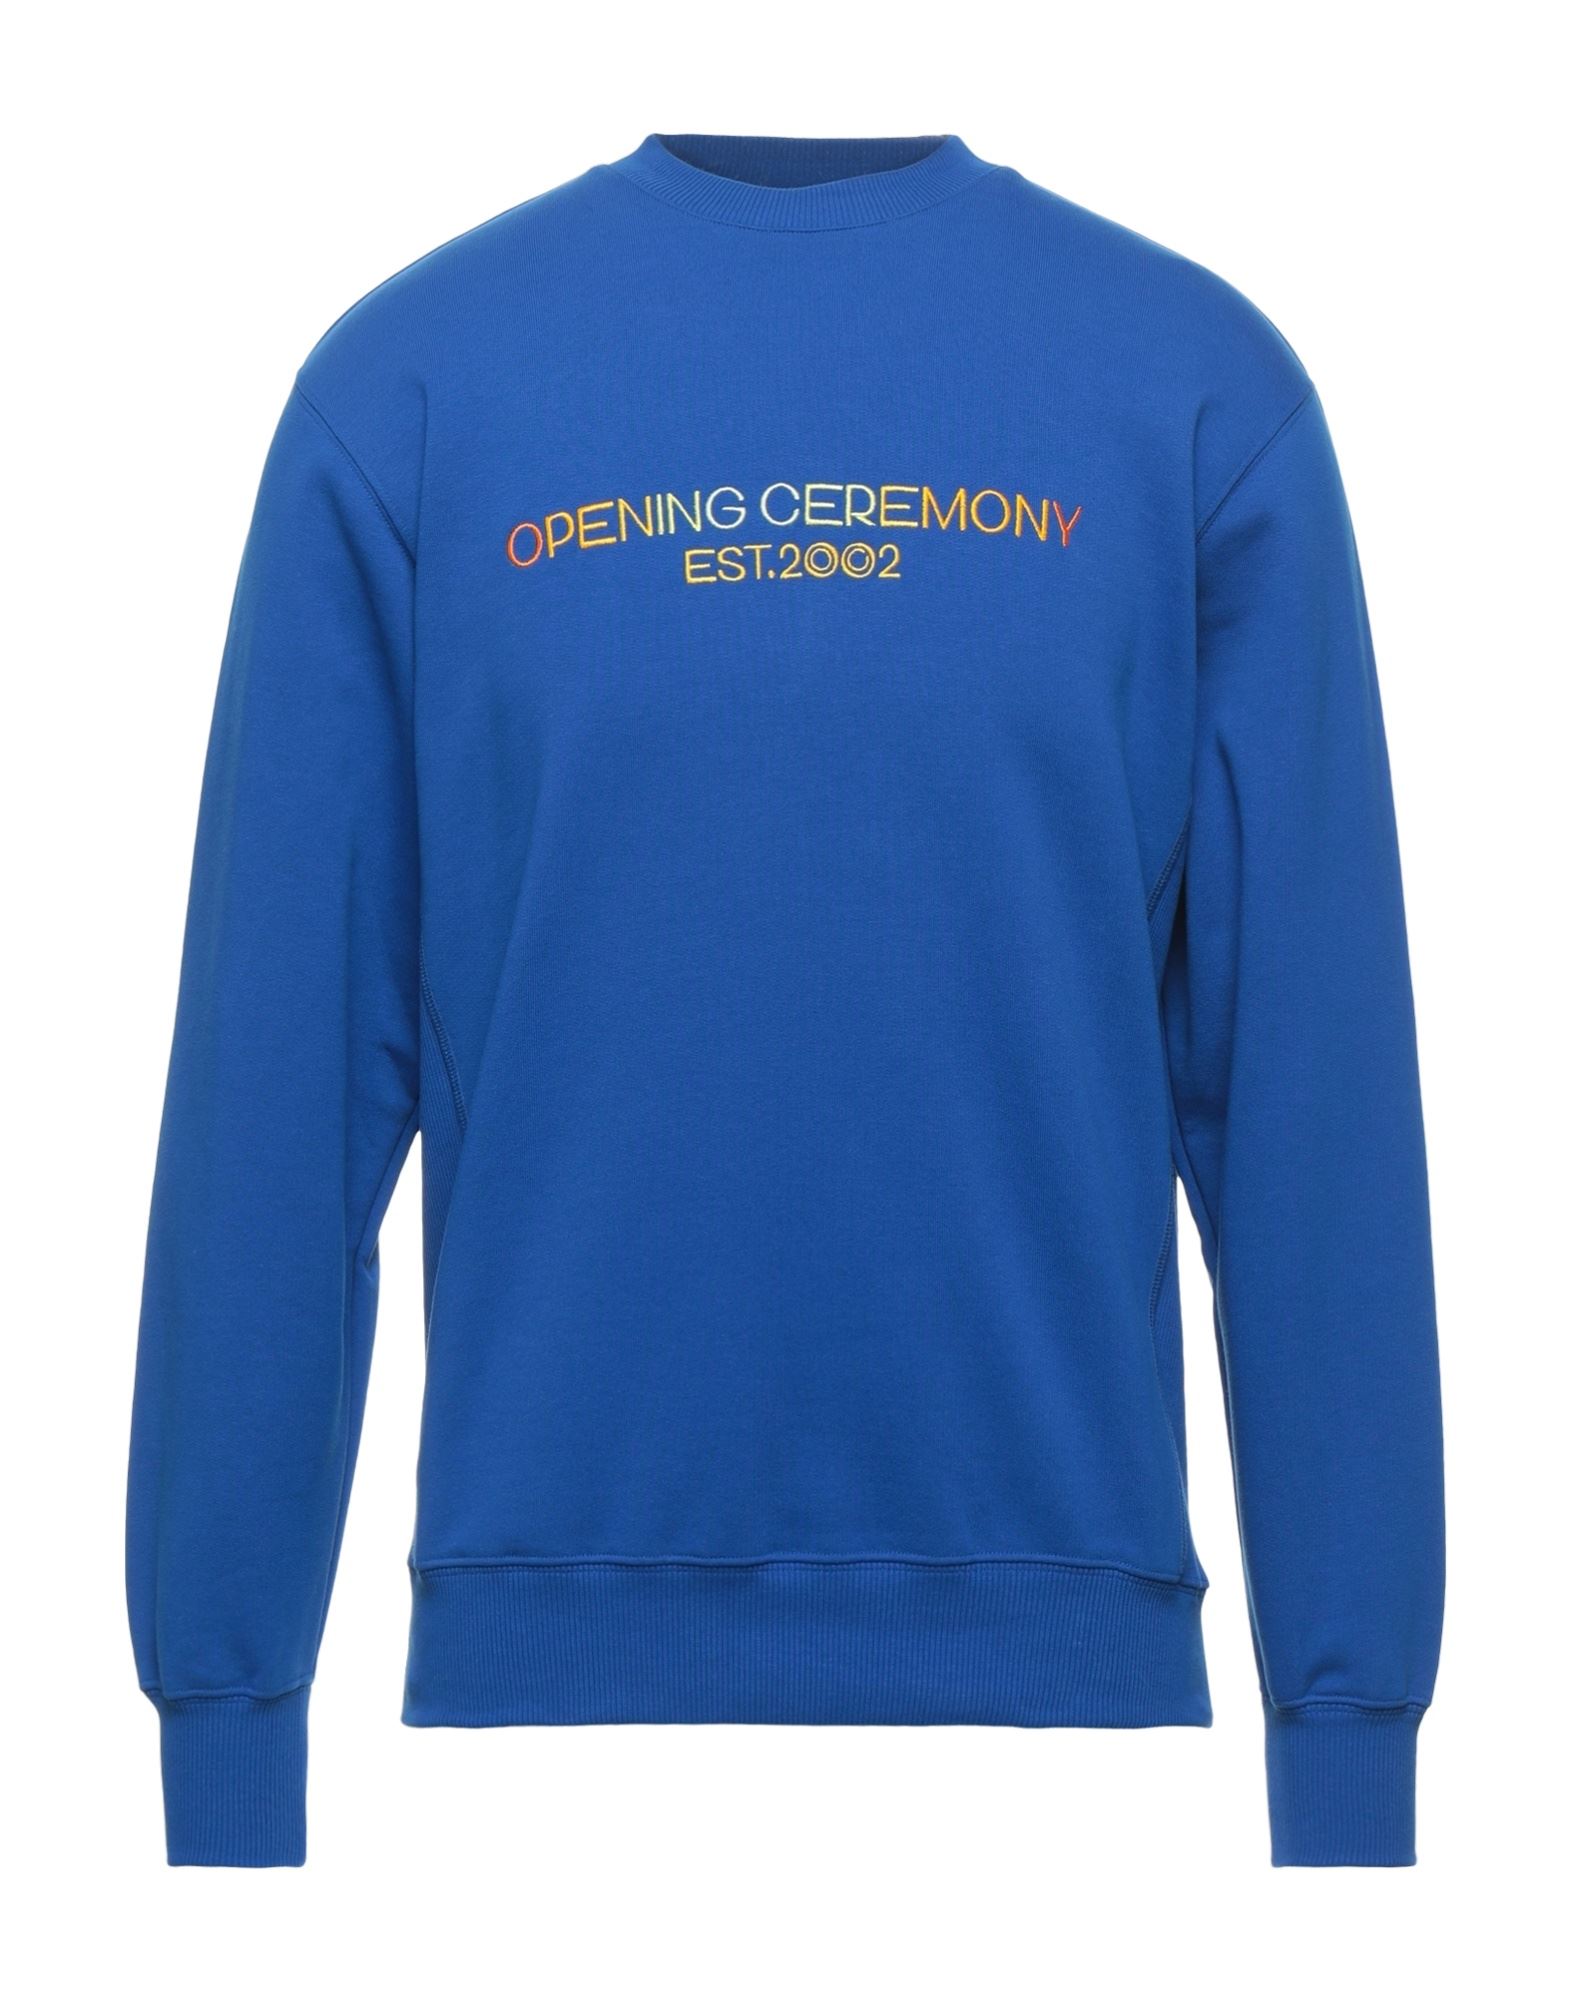 OPENING CEREMONY Sweatshirt Herren Königsblau von OPENING CEREMONY